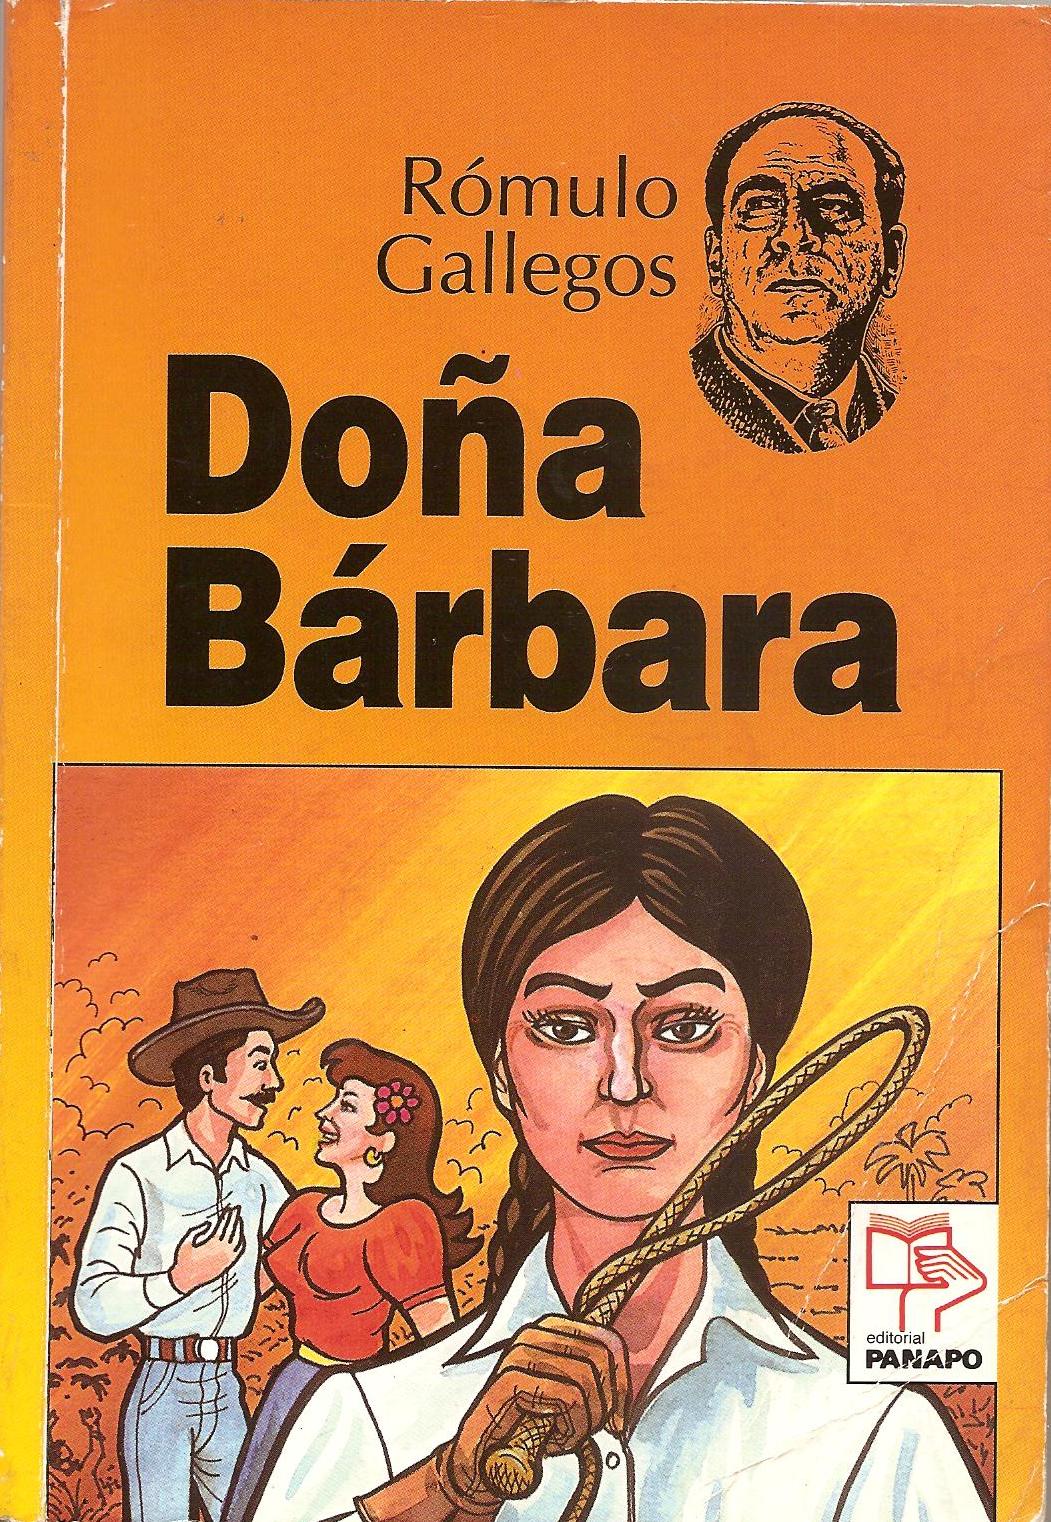 Esta es la portada de Doña Bárbara, la máxima obra de Rómulo Gallegos